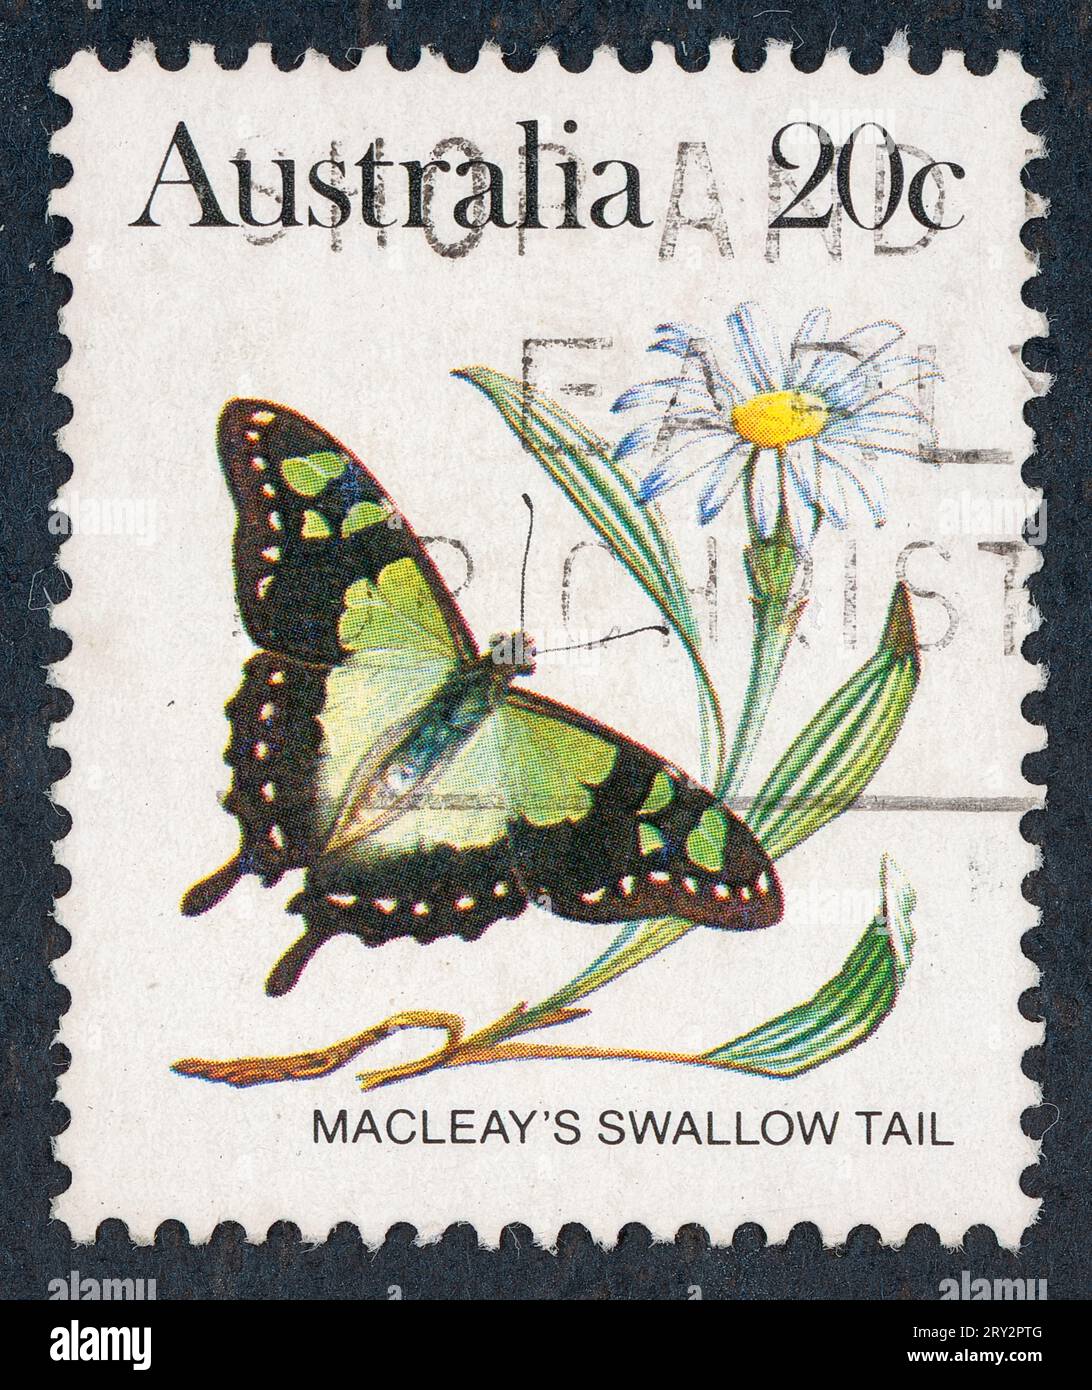 Macleay's Swallowtail (Graphium macleayanus). Australische Schmetterlingsserie. Briefmarke, ausgestellt 1983 in Australien. Stockfoto